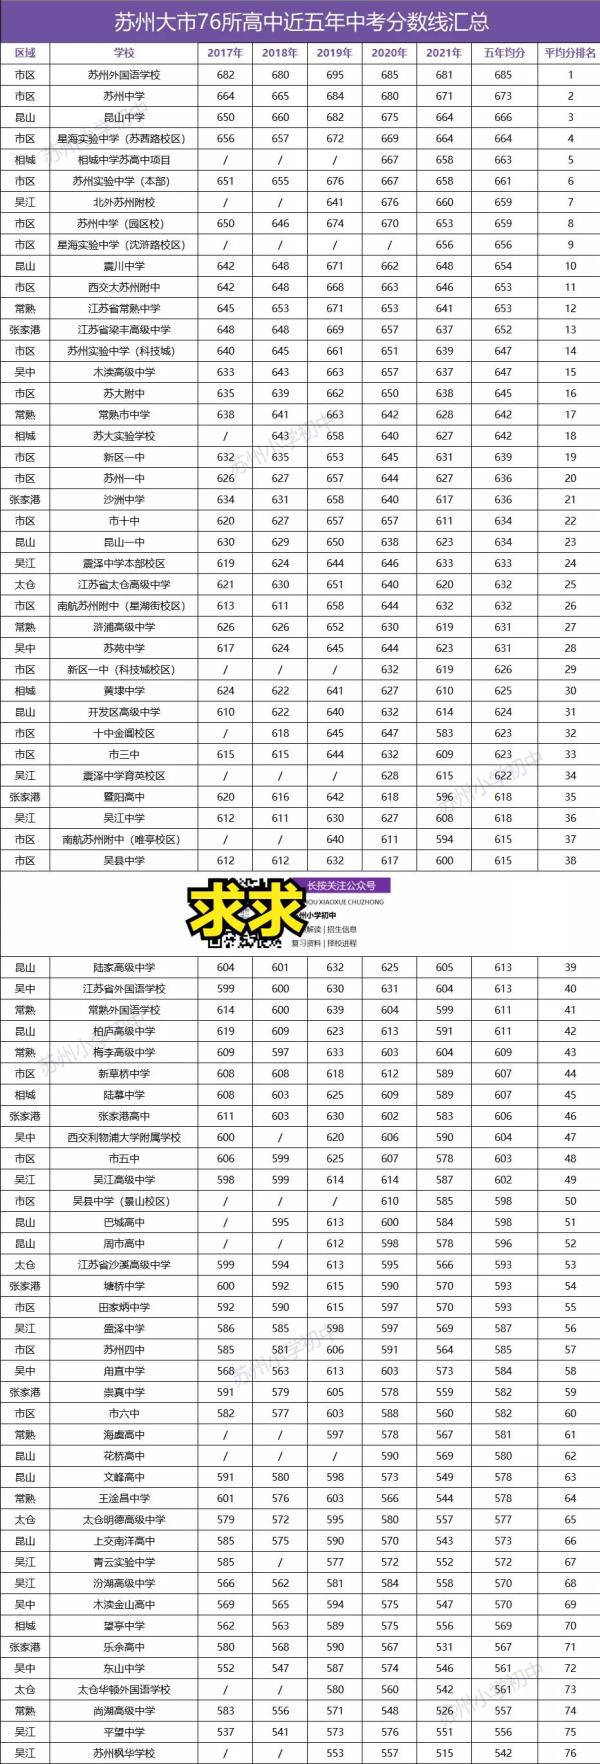 江苏高中成绩排名前50的学校_江苏高中排名前十